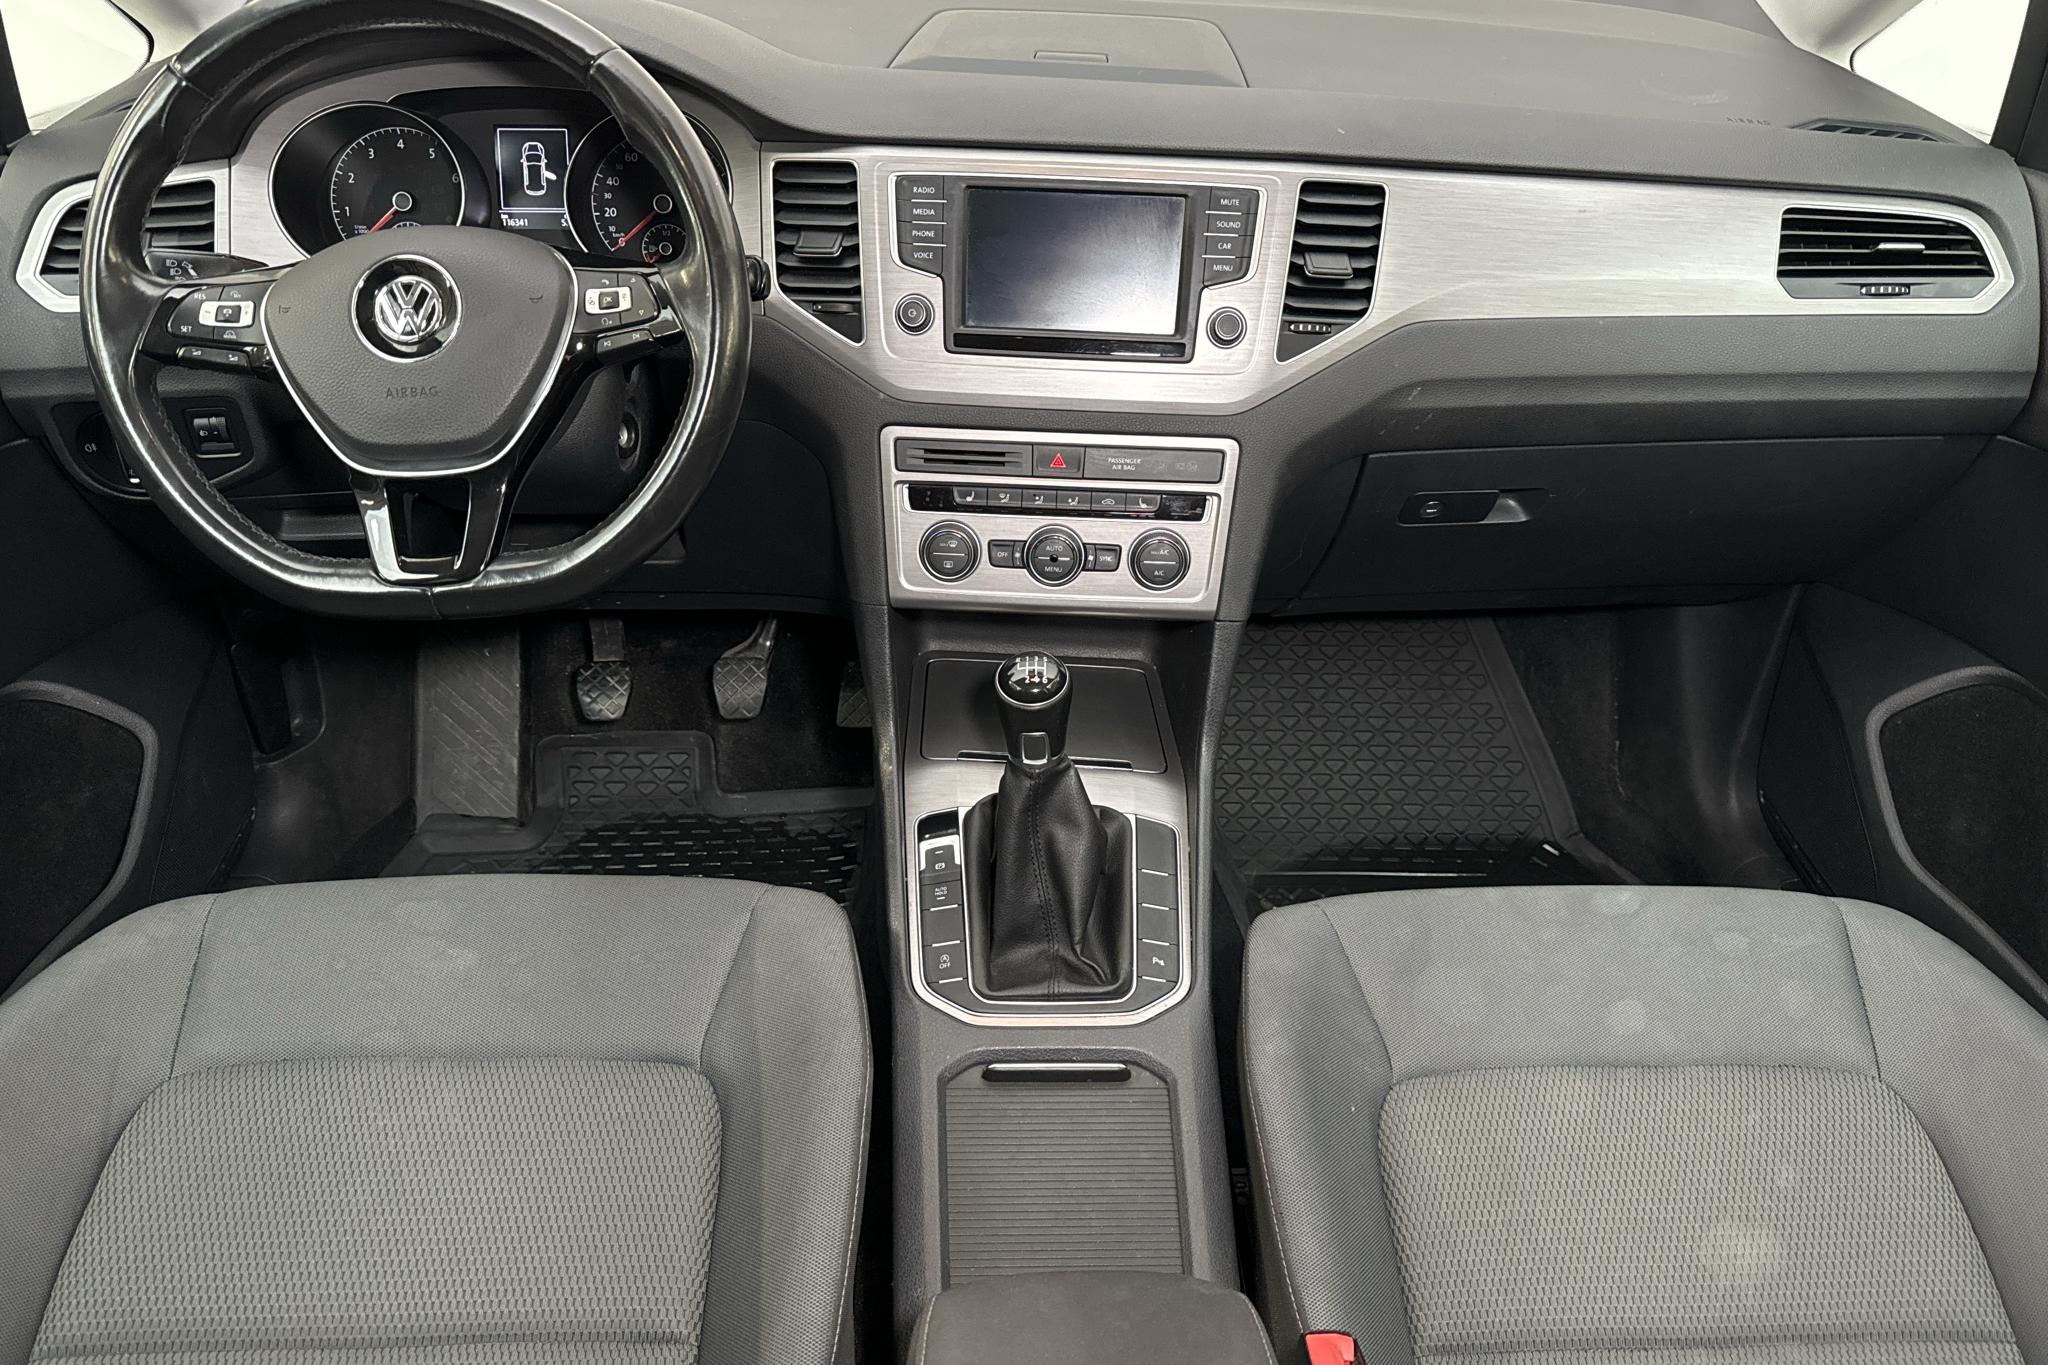 VW Golf VII 1.4 BlueMotion Technology MultiFuel E85 Sportsvan (125hk) - 116 340 km - Manualna - biały - 2016